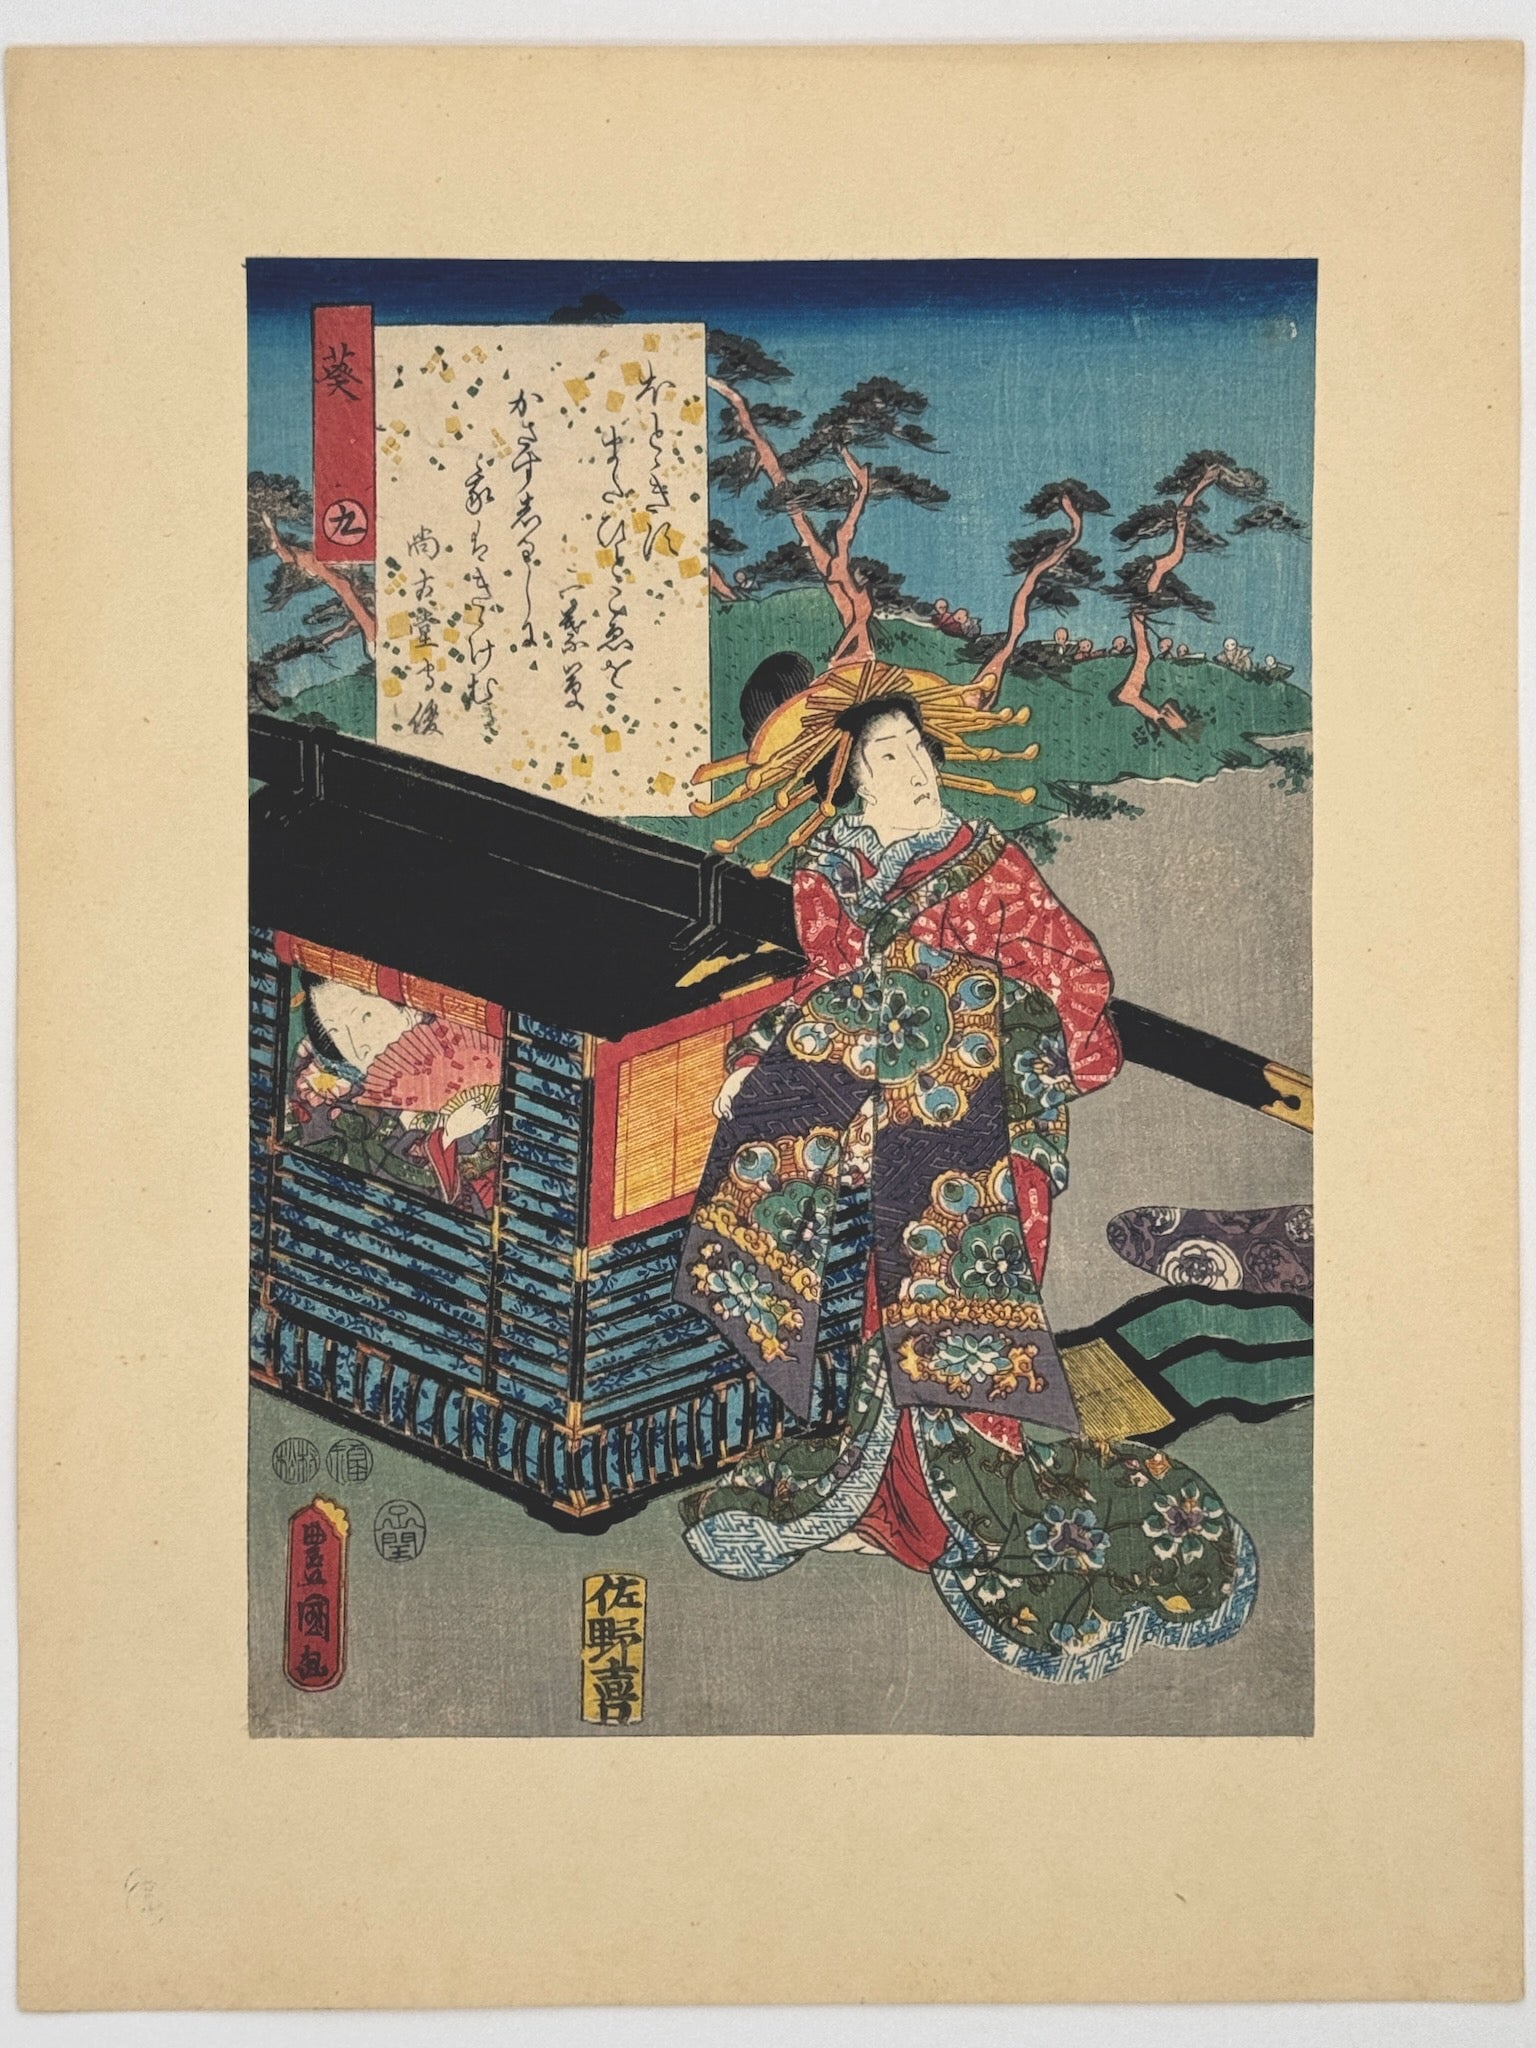 Estampe Japonaise de Kunisada | série du Genji moderne | Chapitre 9 : Aoi, ou les mauves